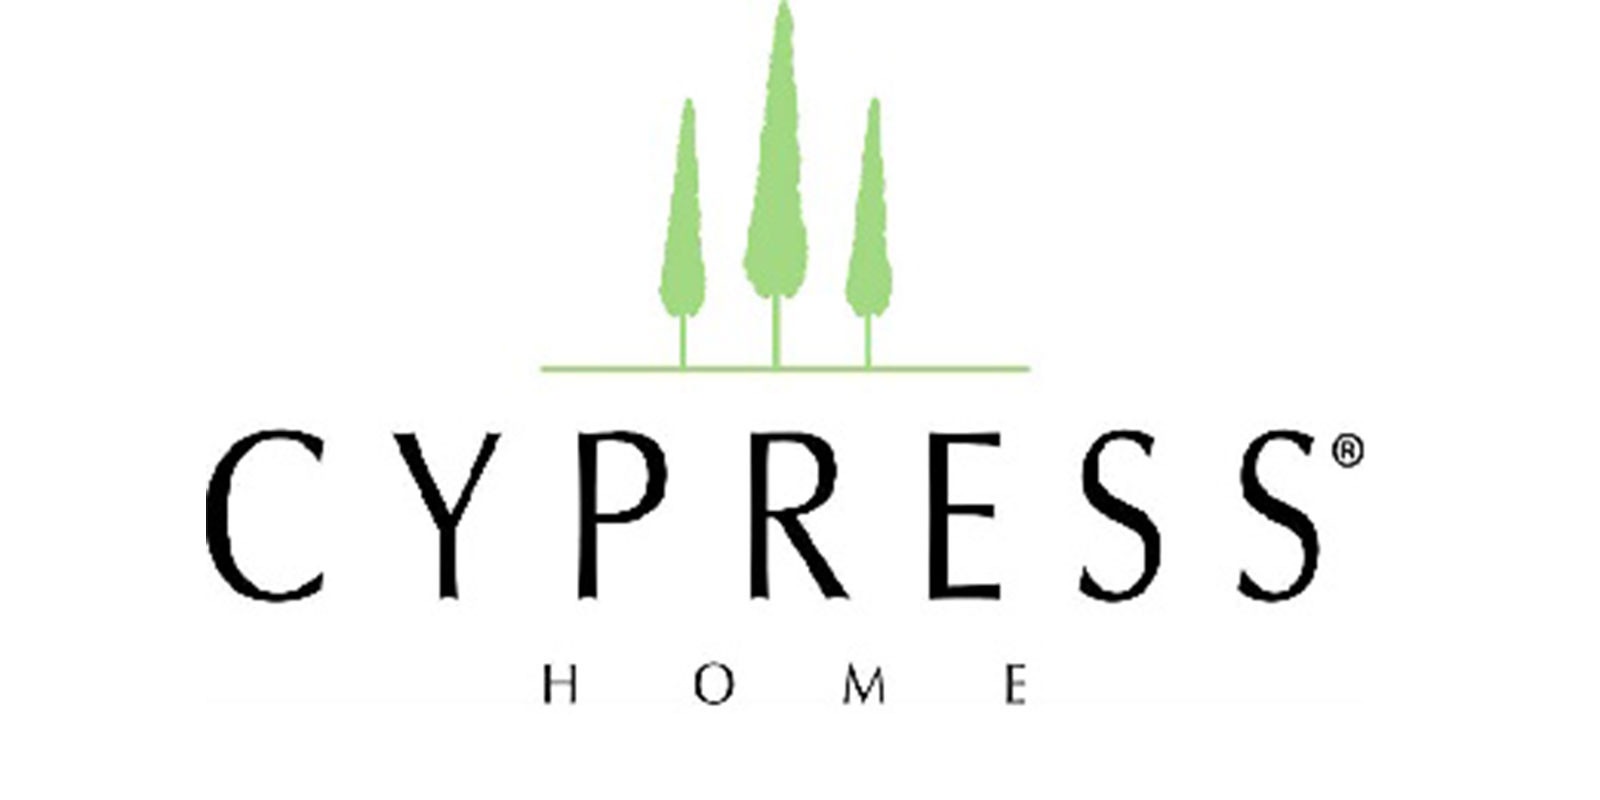 Cypress Club